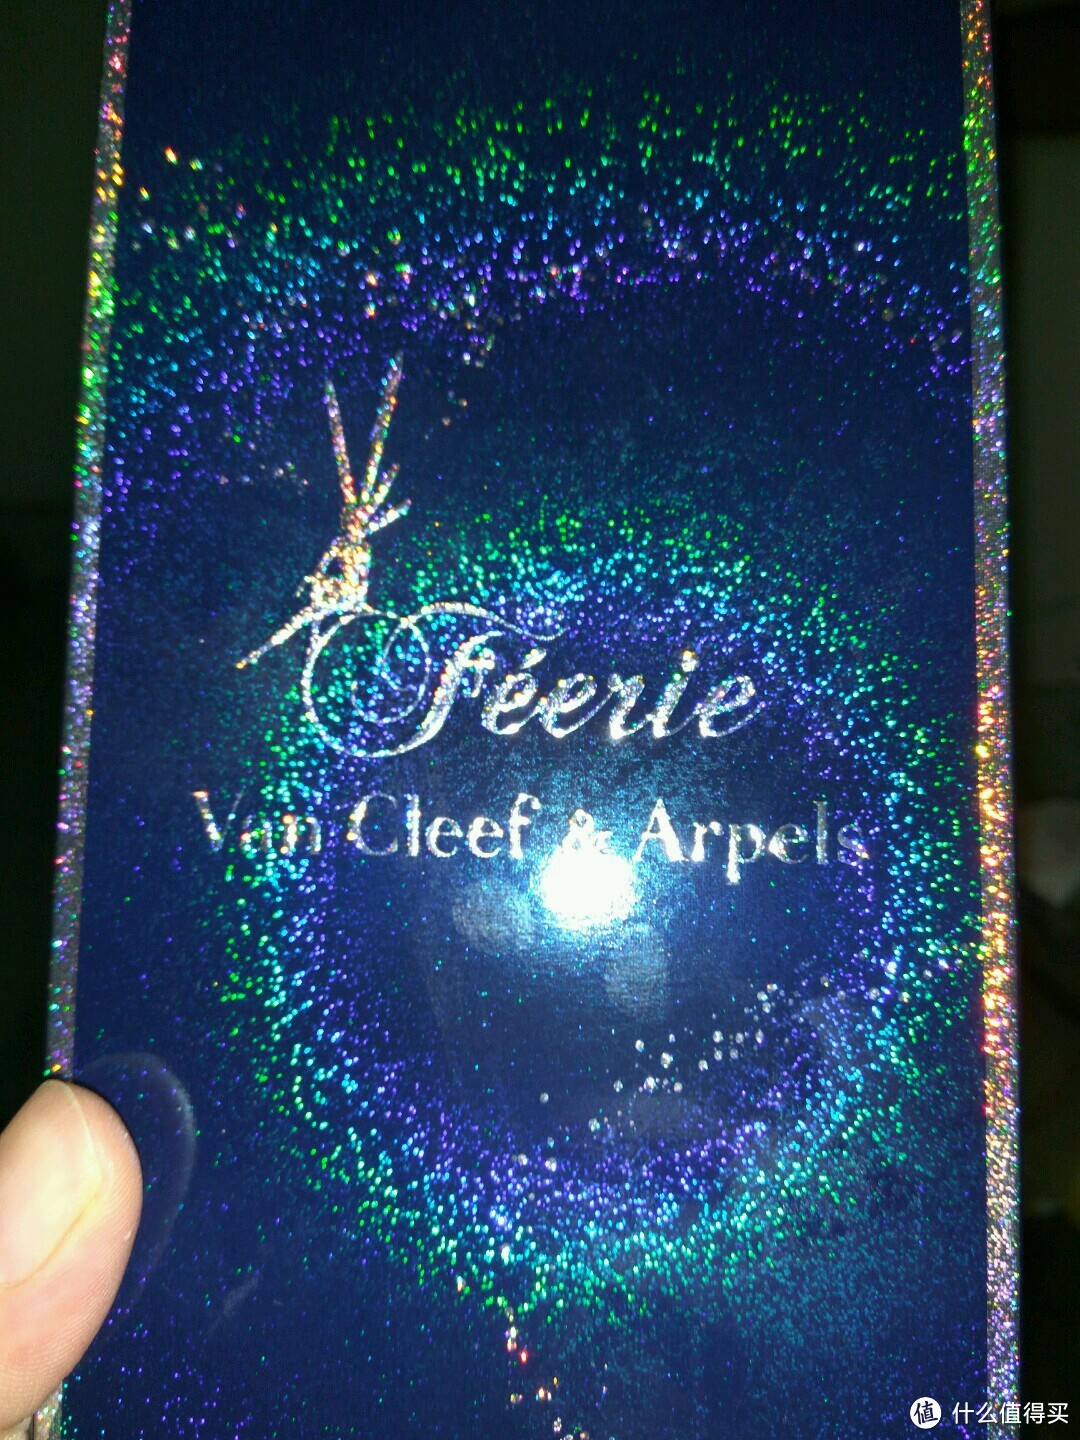 Van Cleef & Arpels 梵克雅宝 Feerie 梦幻精灵 香水喷雾——————你值得拥有